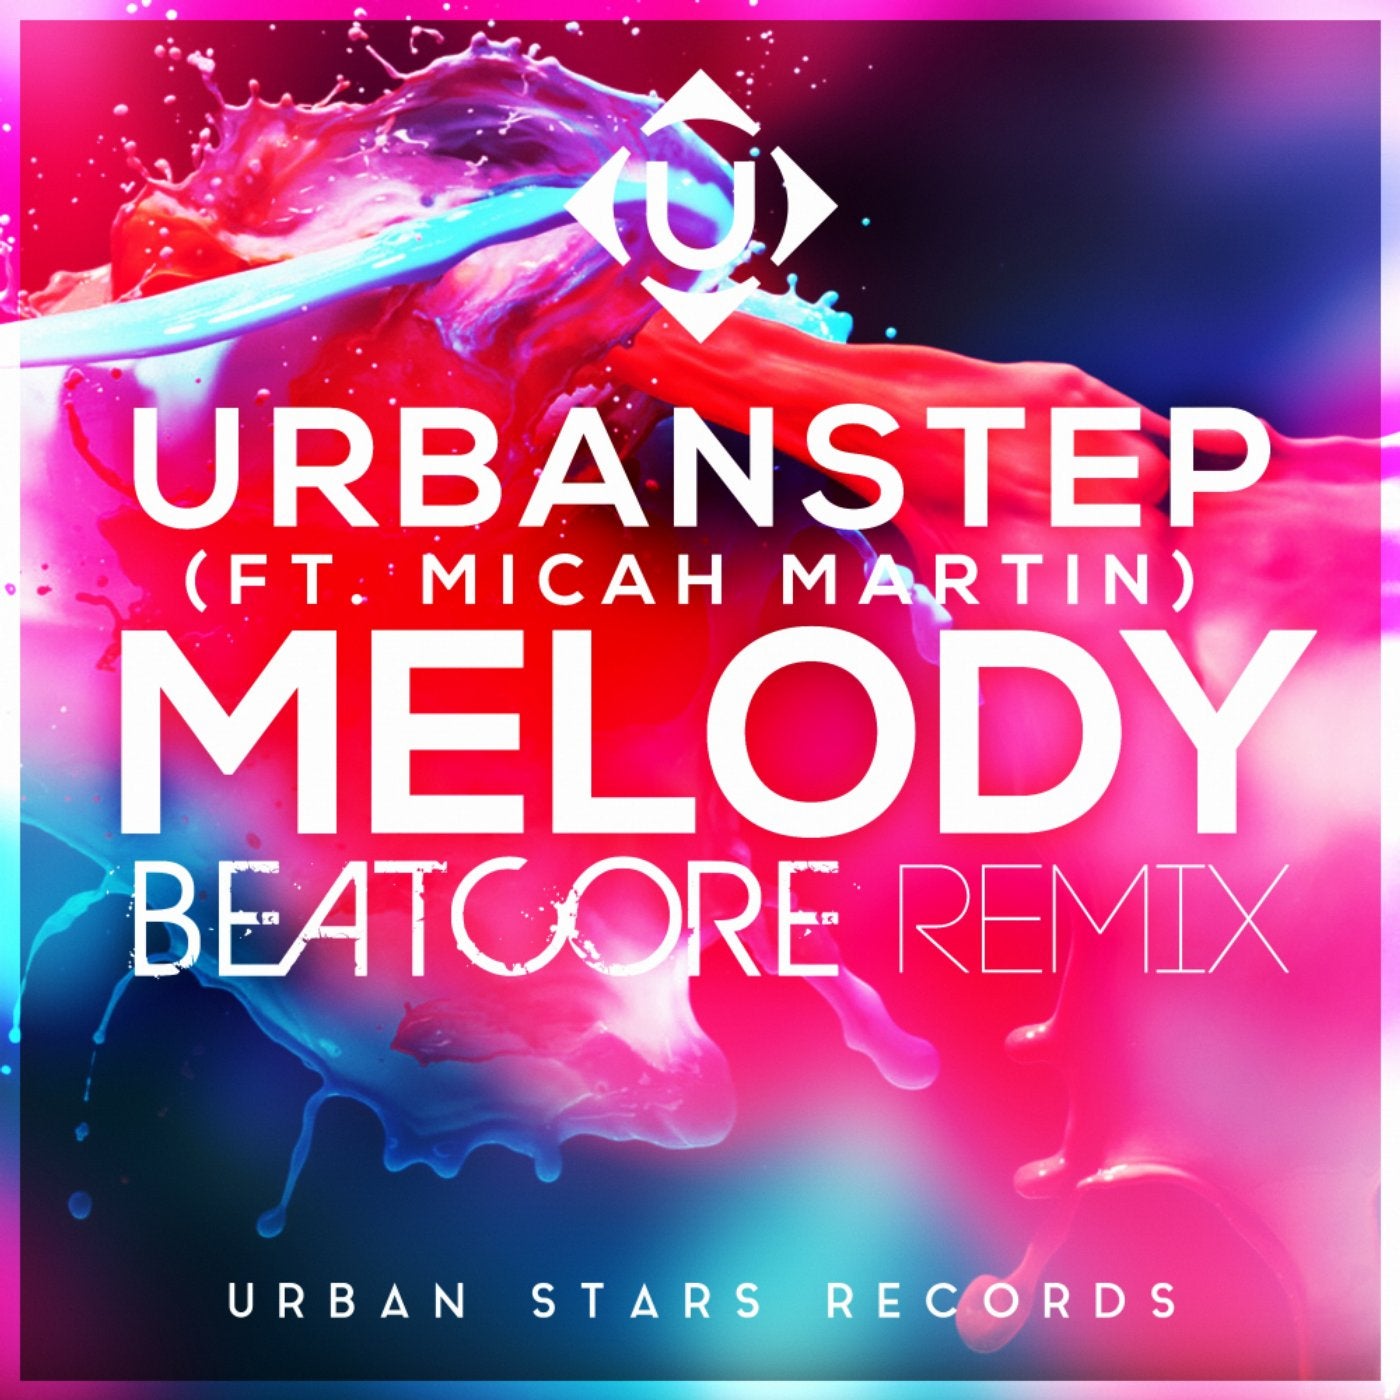 Melody (Beatcore Remix)